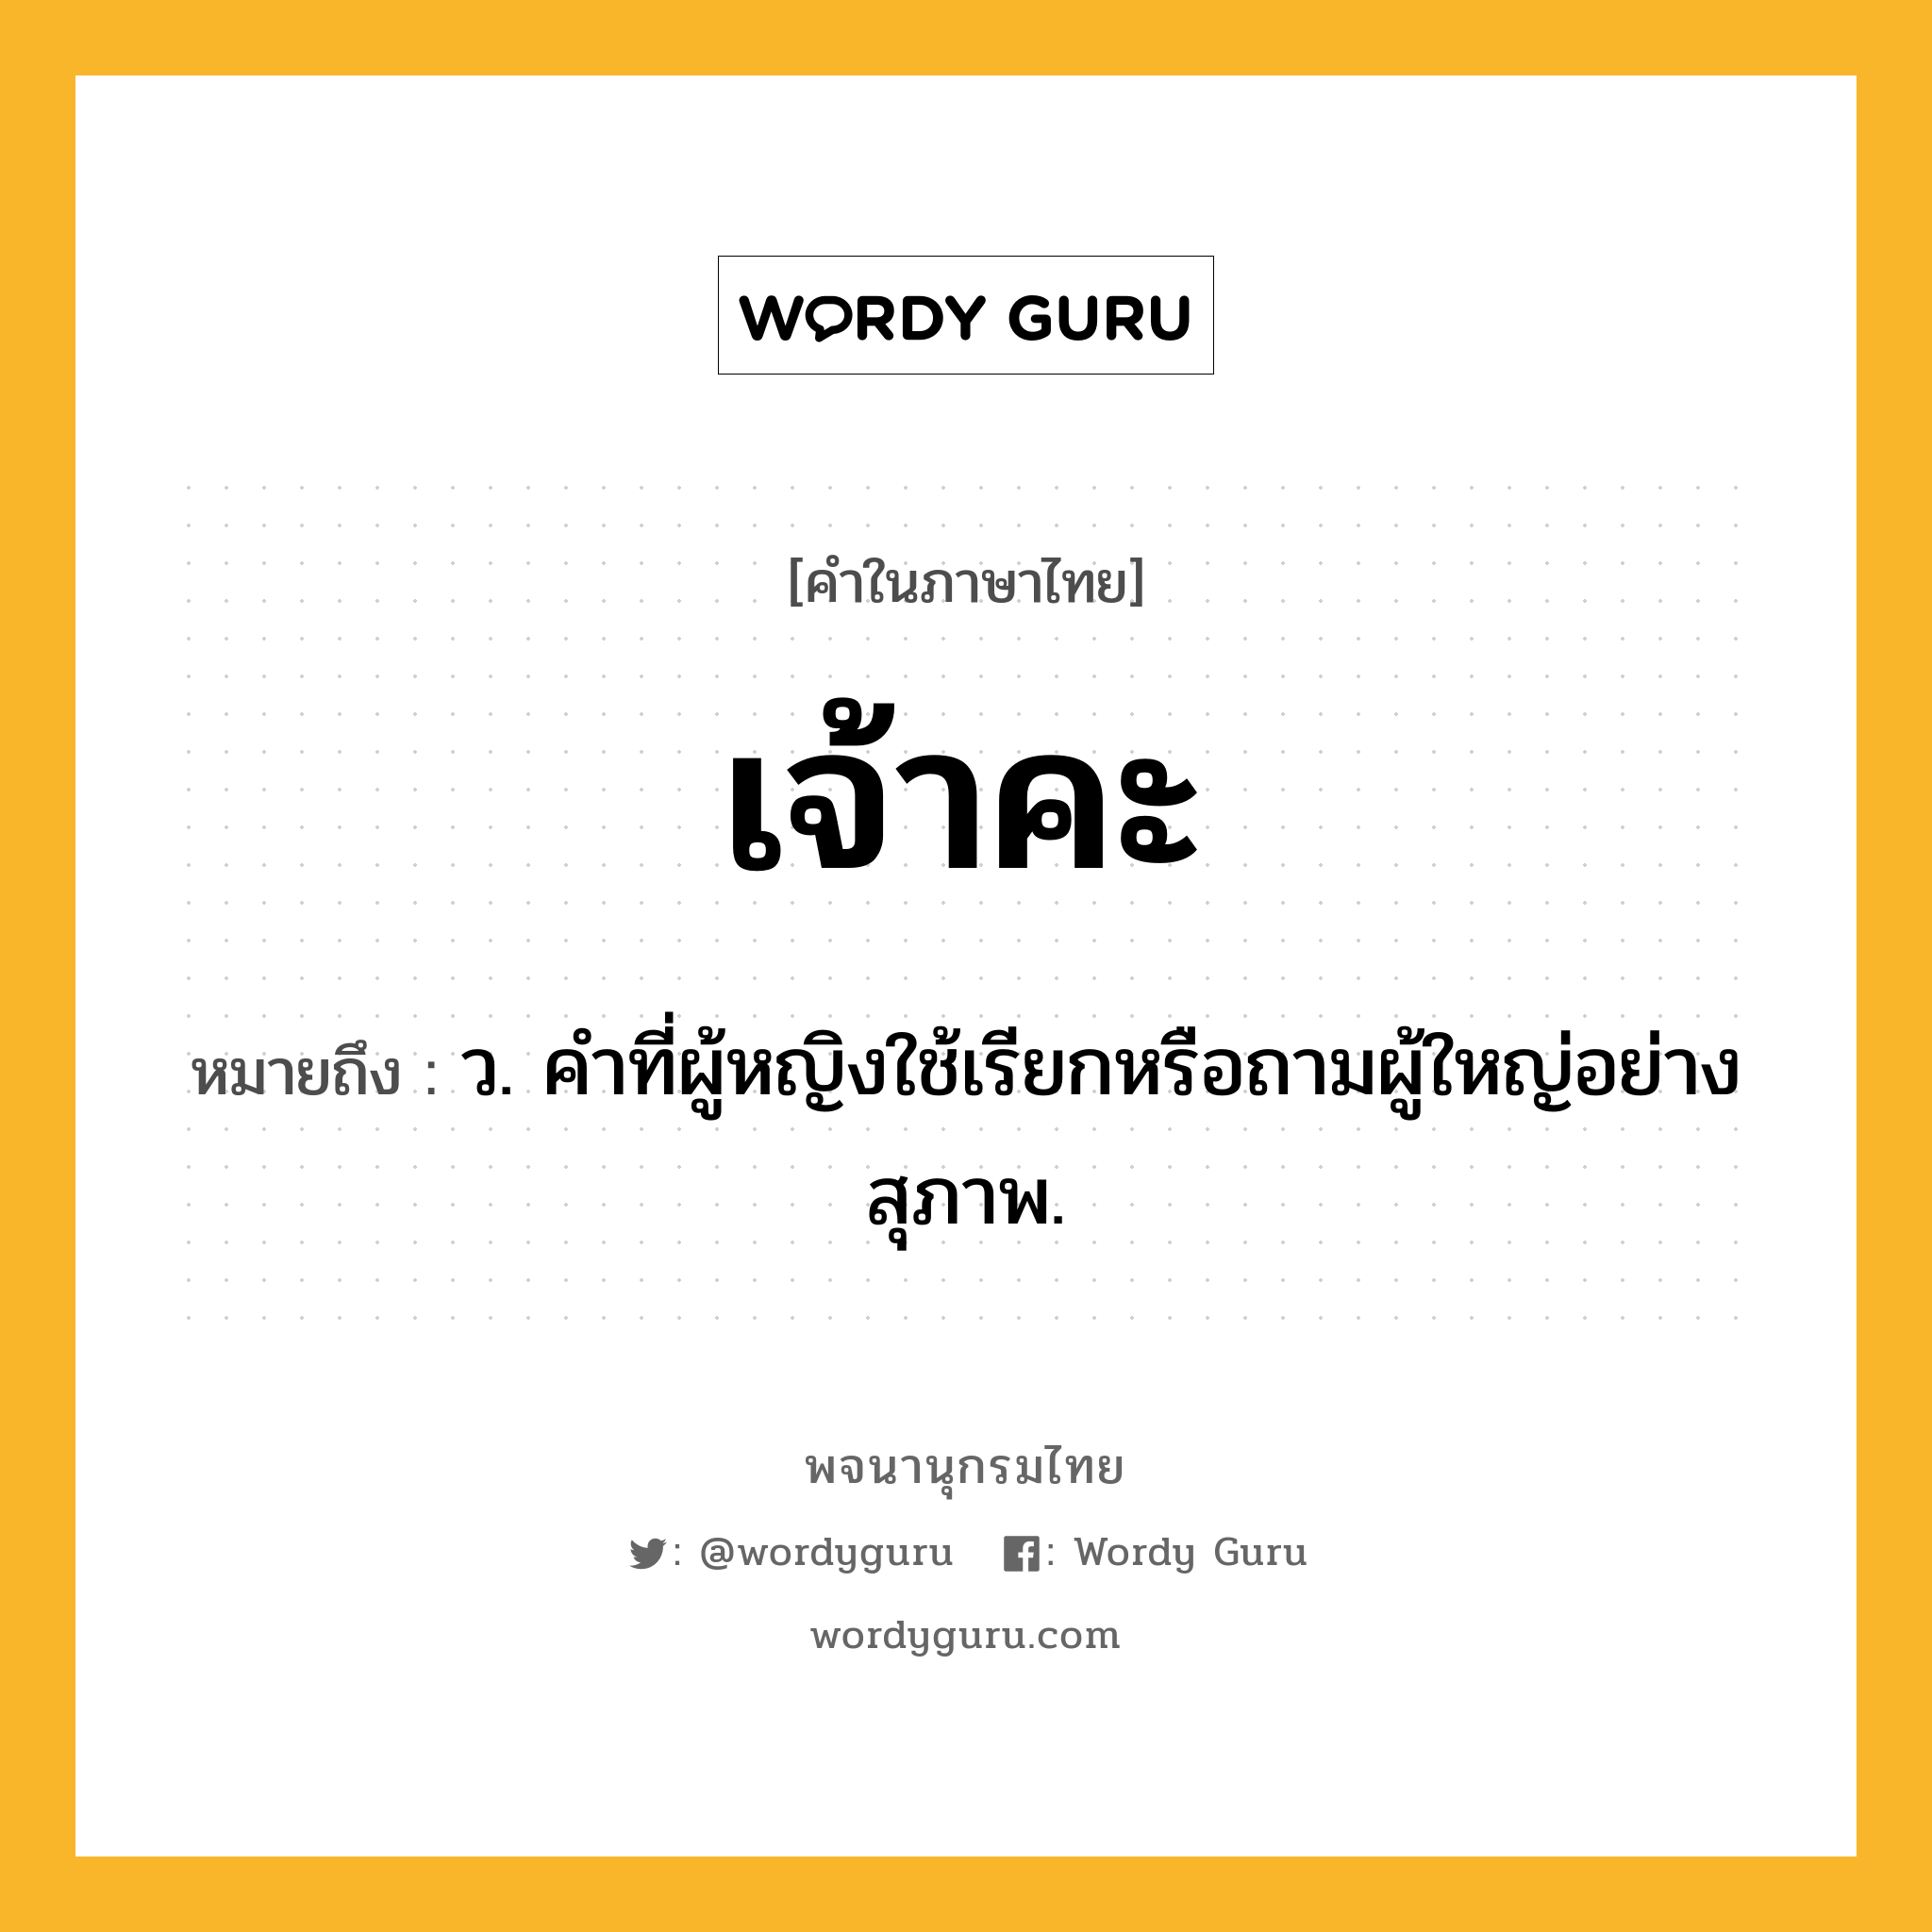 เจ้าคะ ความหมาย หมายถึงอะไร?, คำในภาษาไทย เจ้าคะ หมายถึง ว. คำที่ผู้หญิงใช้เรียกหรือถามผู้ใหญ่อย่างสุภาพ.